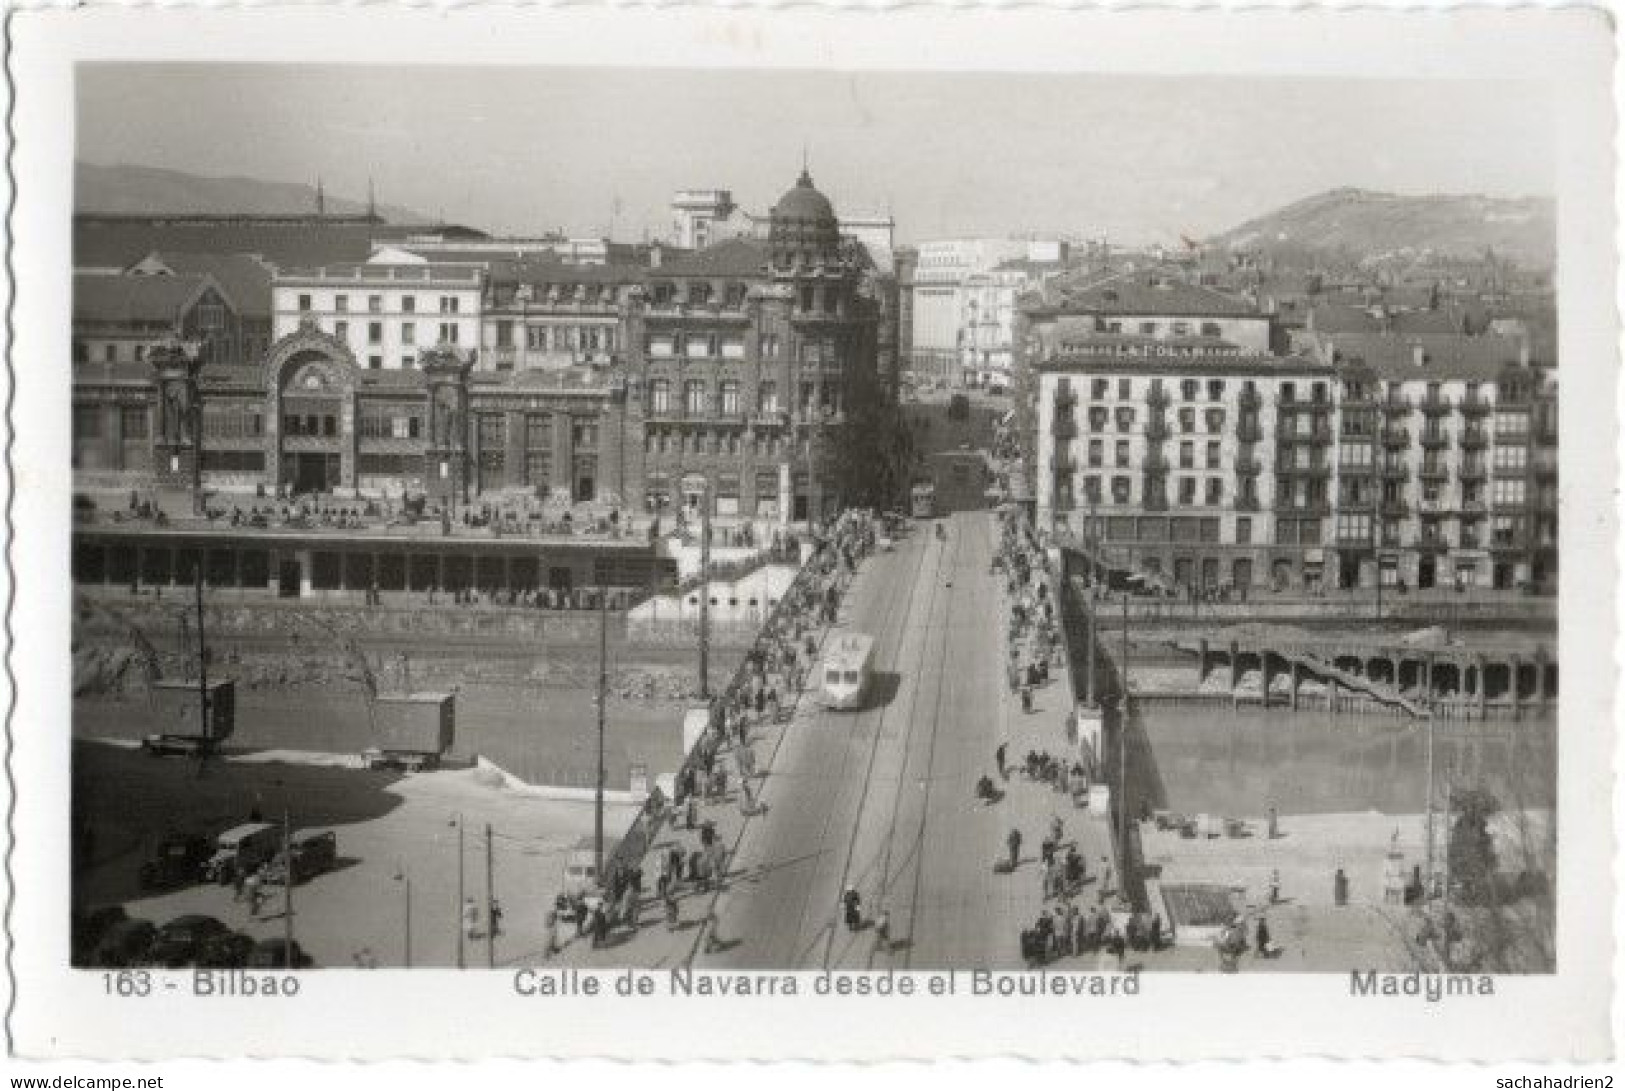 Pf. BILBAO. Calle De Navarra Desde El Boulevard. 163 - Vizcaya (Bilbao)